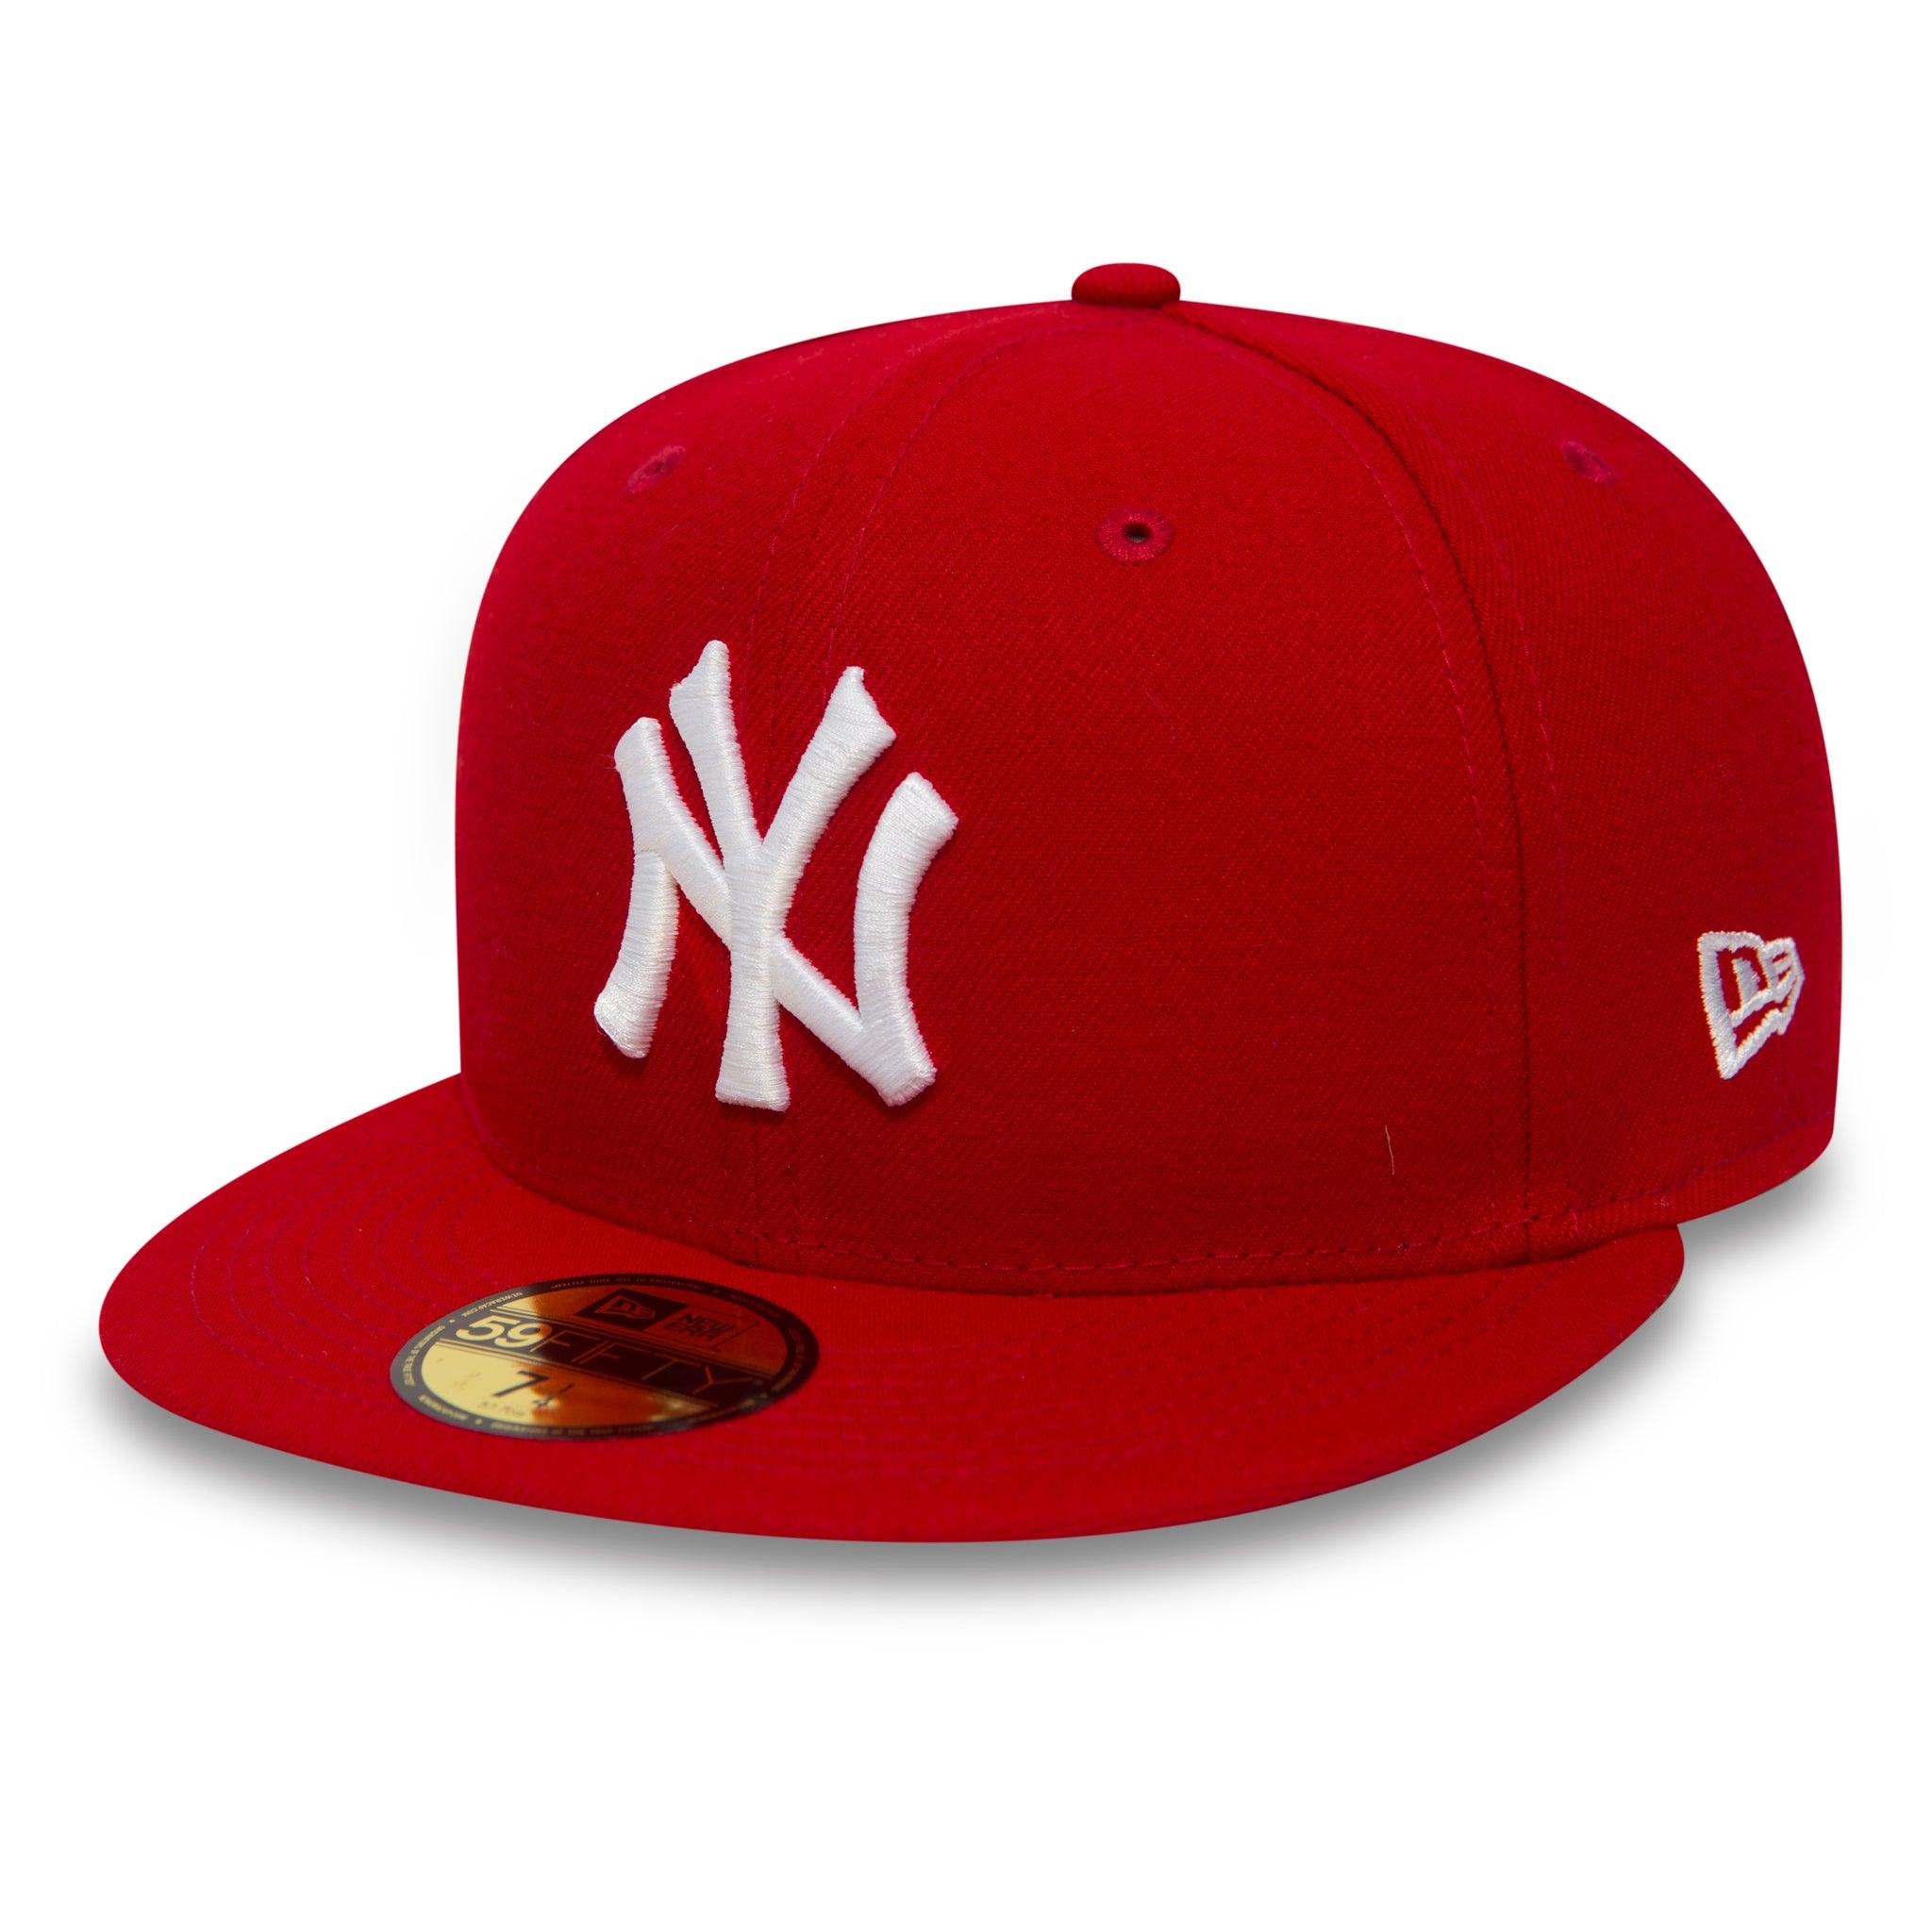 red mlb hat